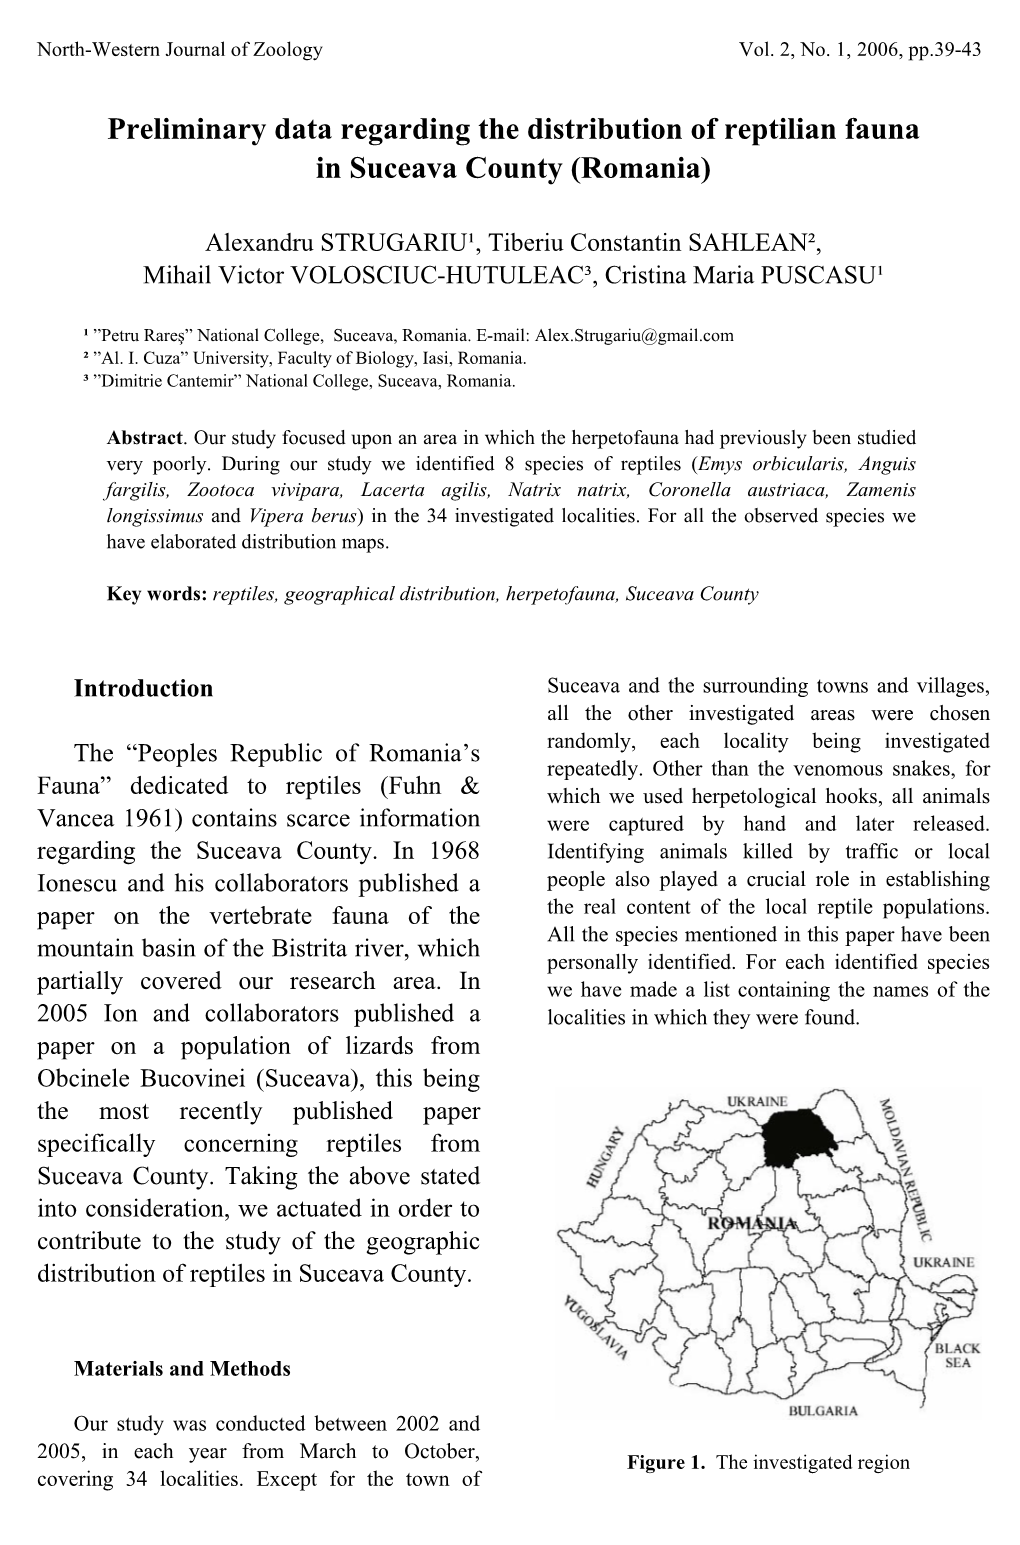 Preliminary Data Regarding the Distribution of Reptilian Fauna in Suceava County (Romania)